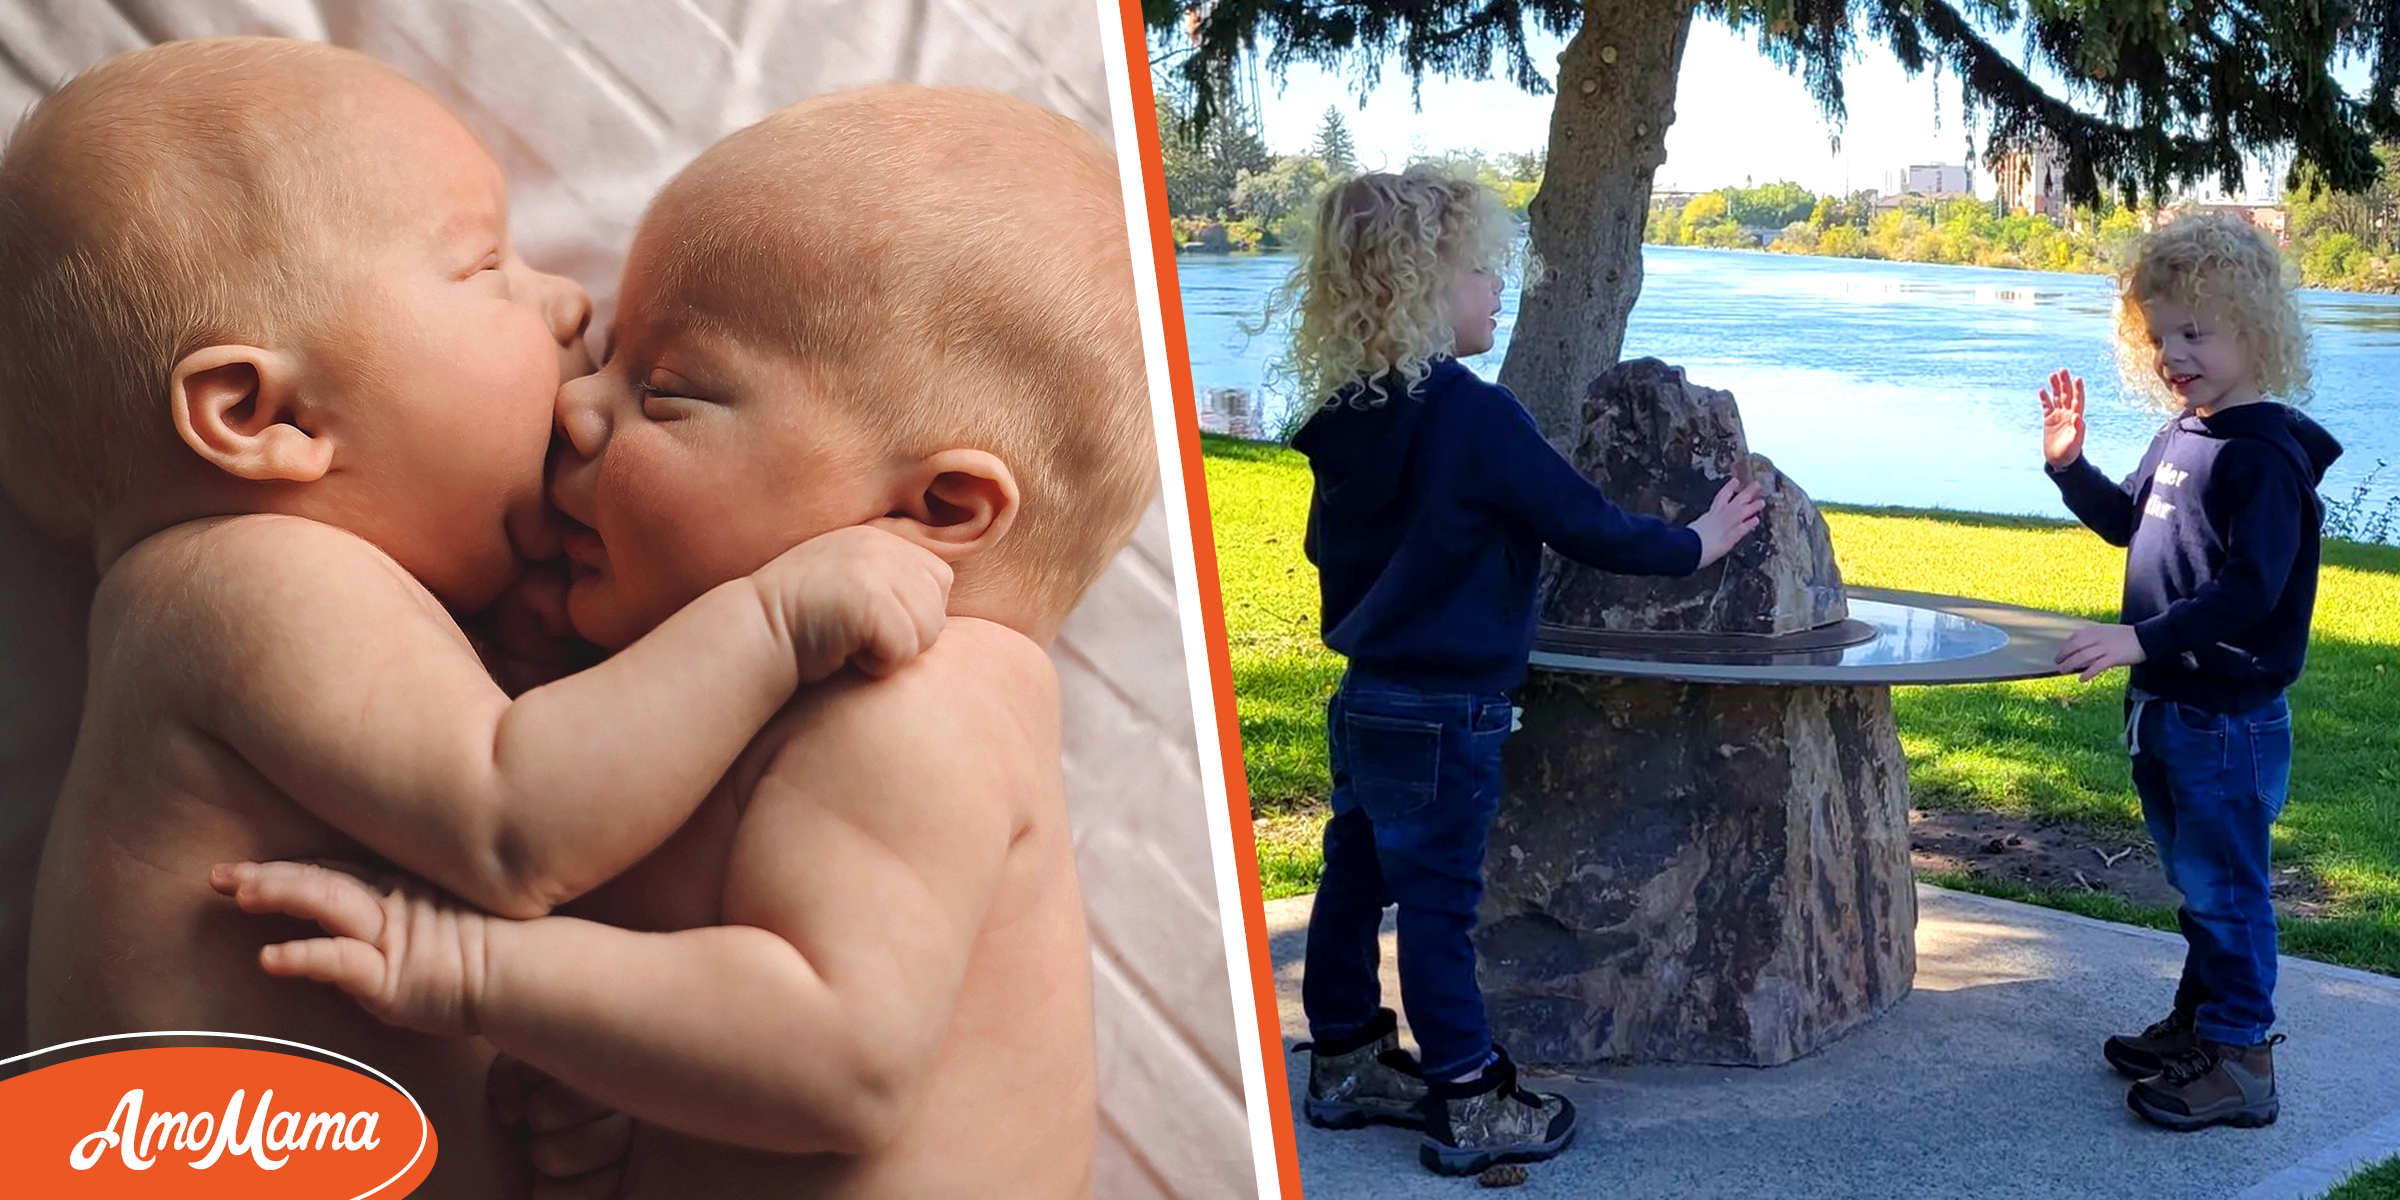 Une mère de 5 enfants donne naissance à d’étonnants jumeaux albinos – elle doit les emmener à environ 4900 kilomètres de chez elle pour les protéger des UV